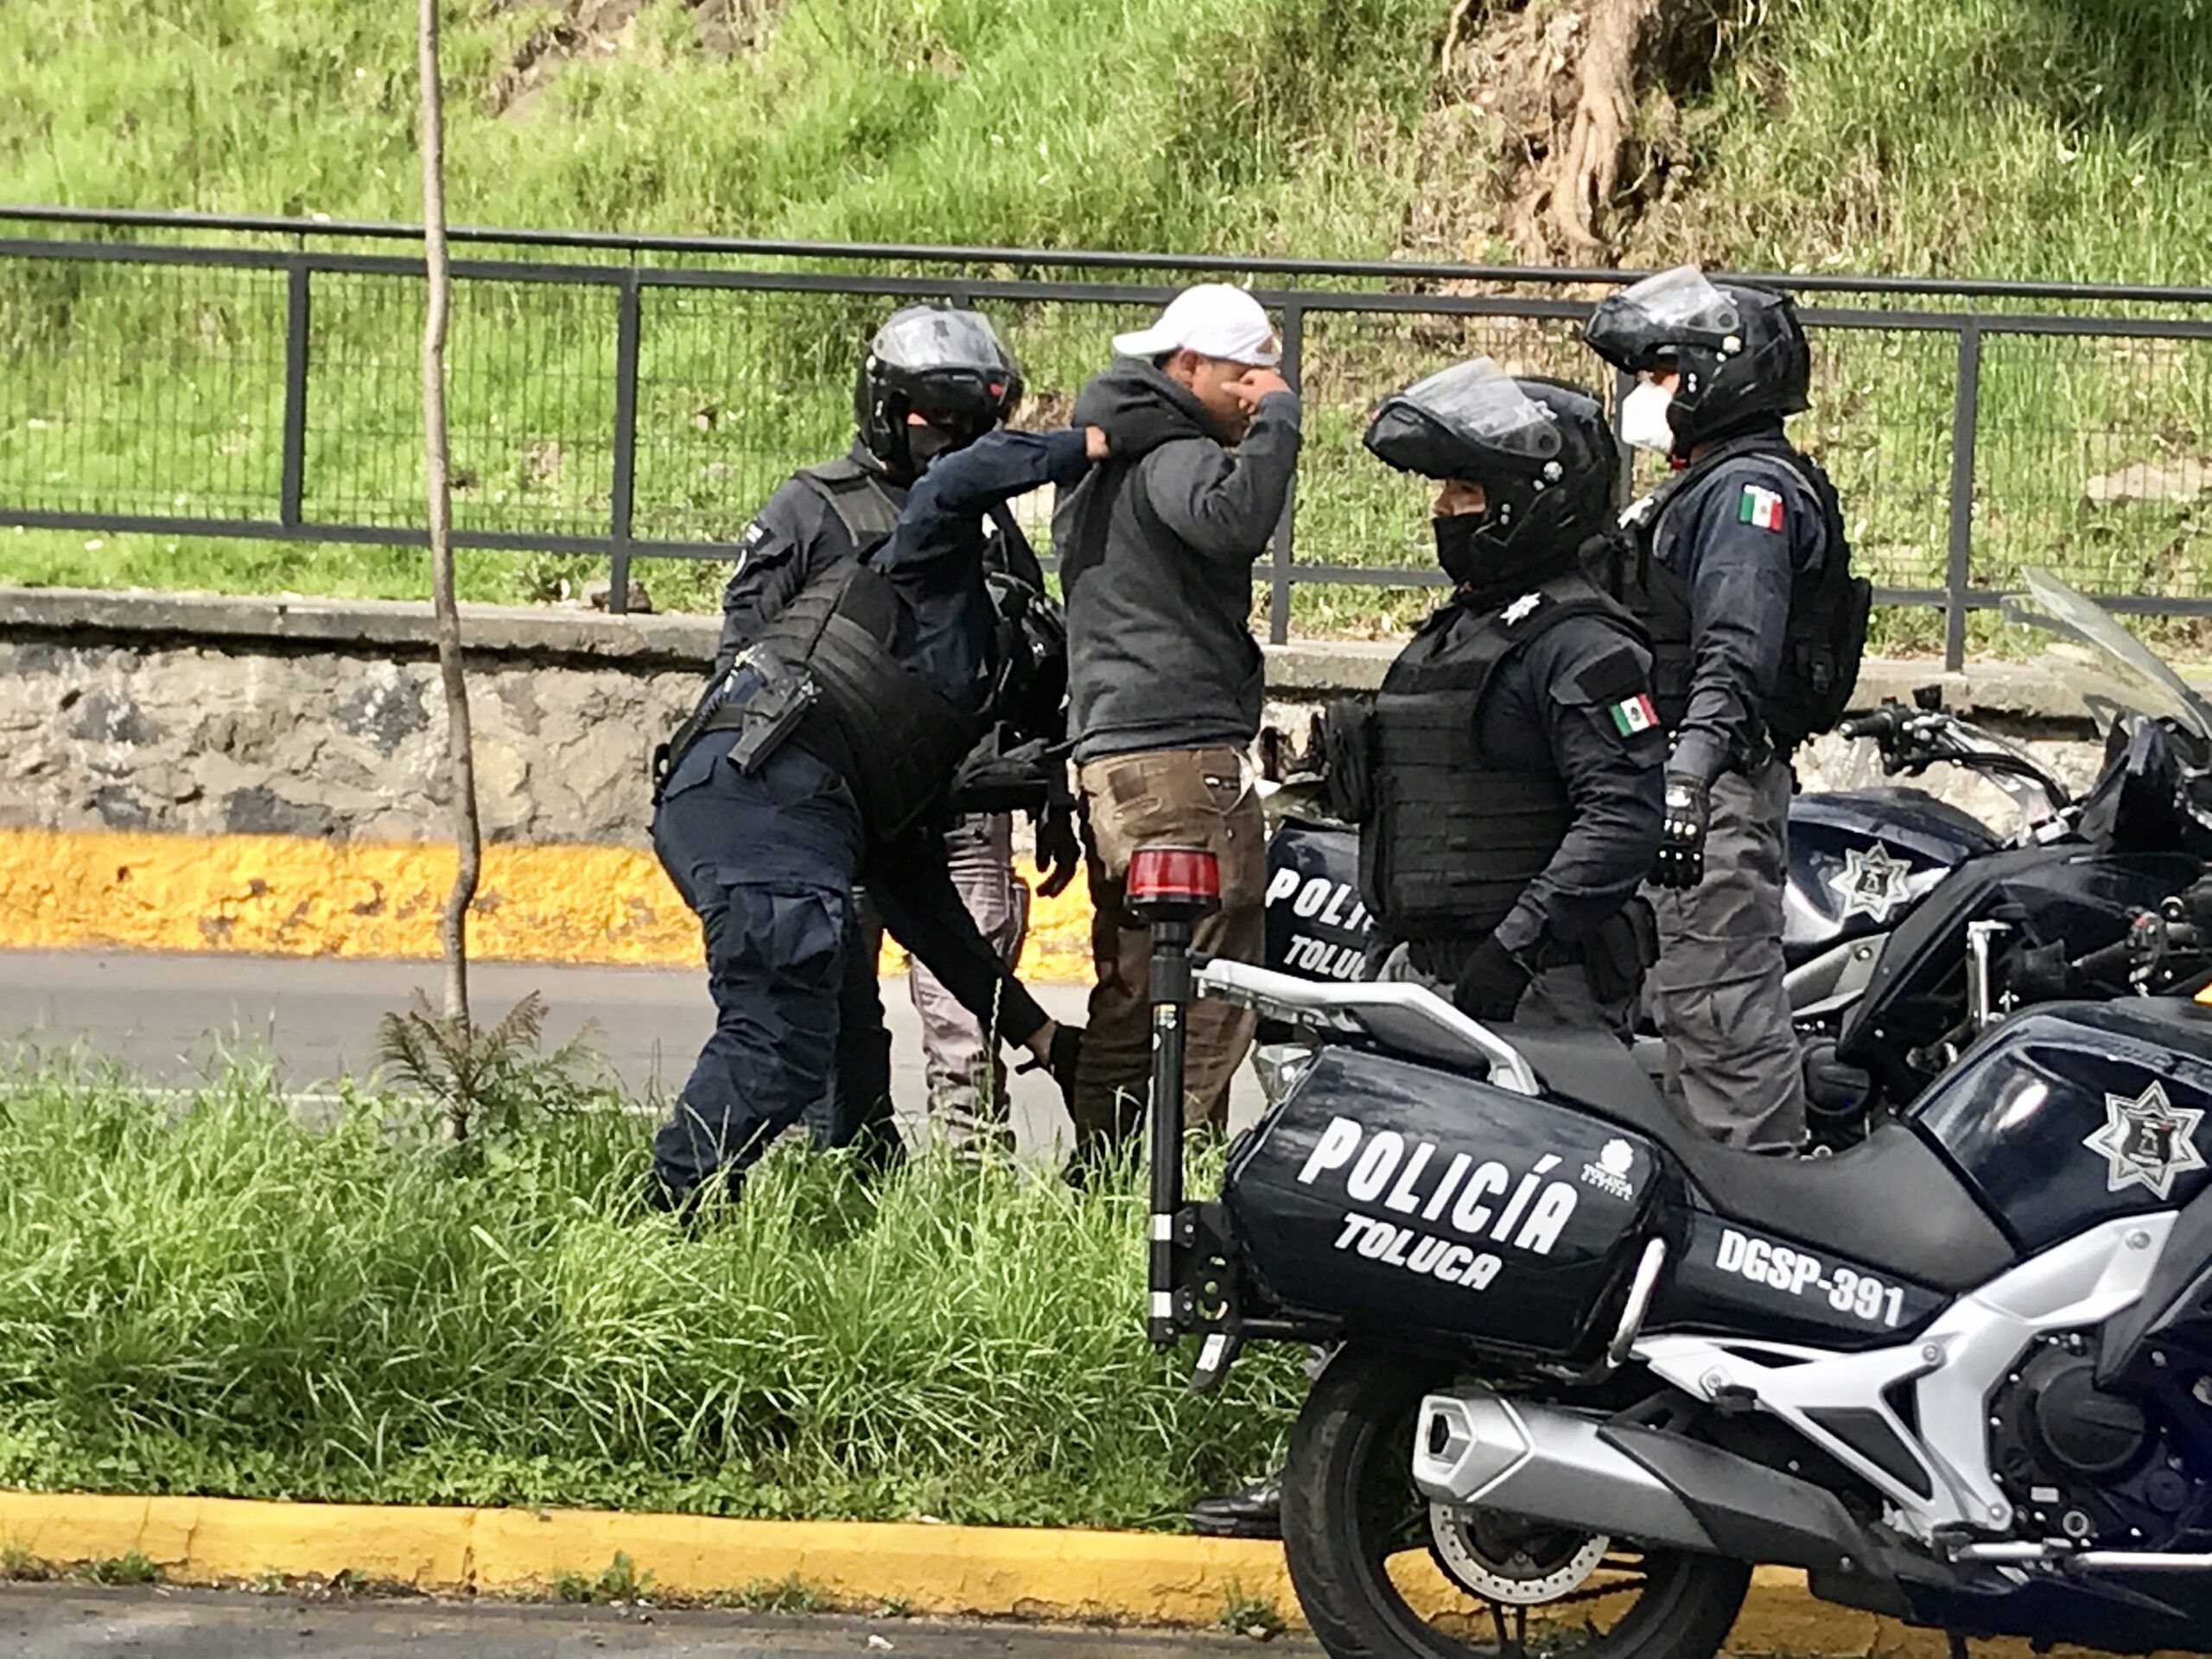 Con grupo motorizado de seguridad pública, Toluca disminuye tiempos de respuesta